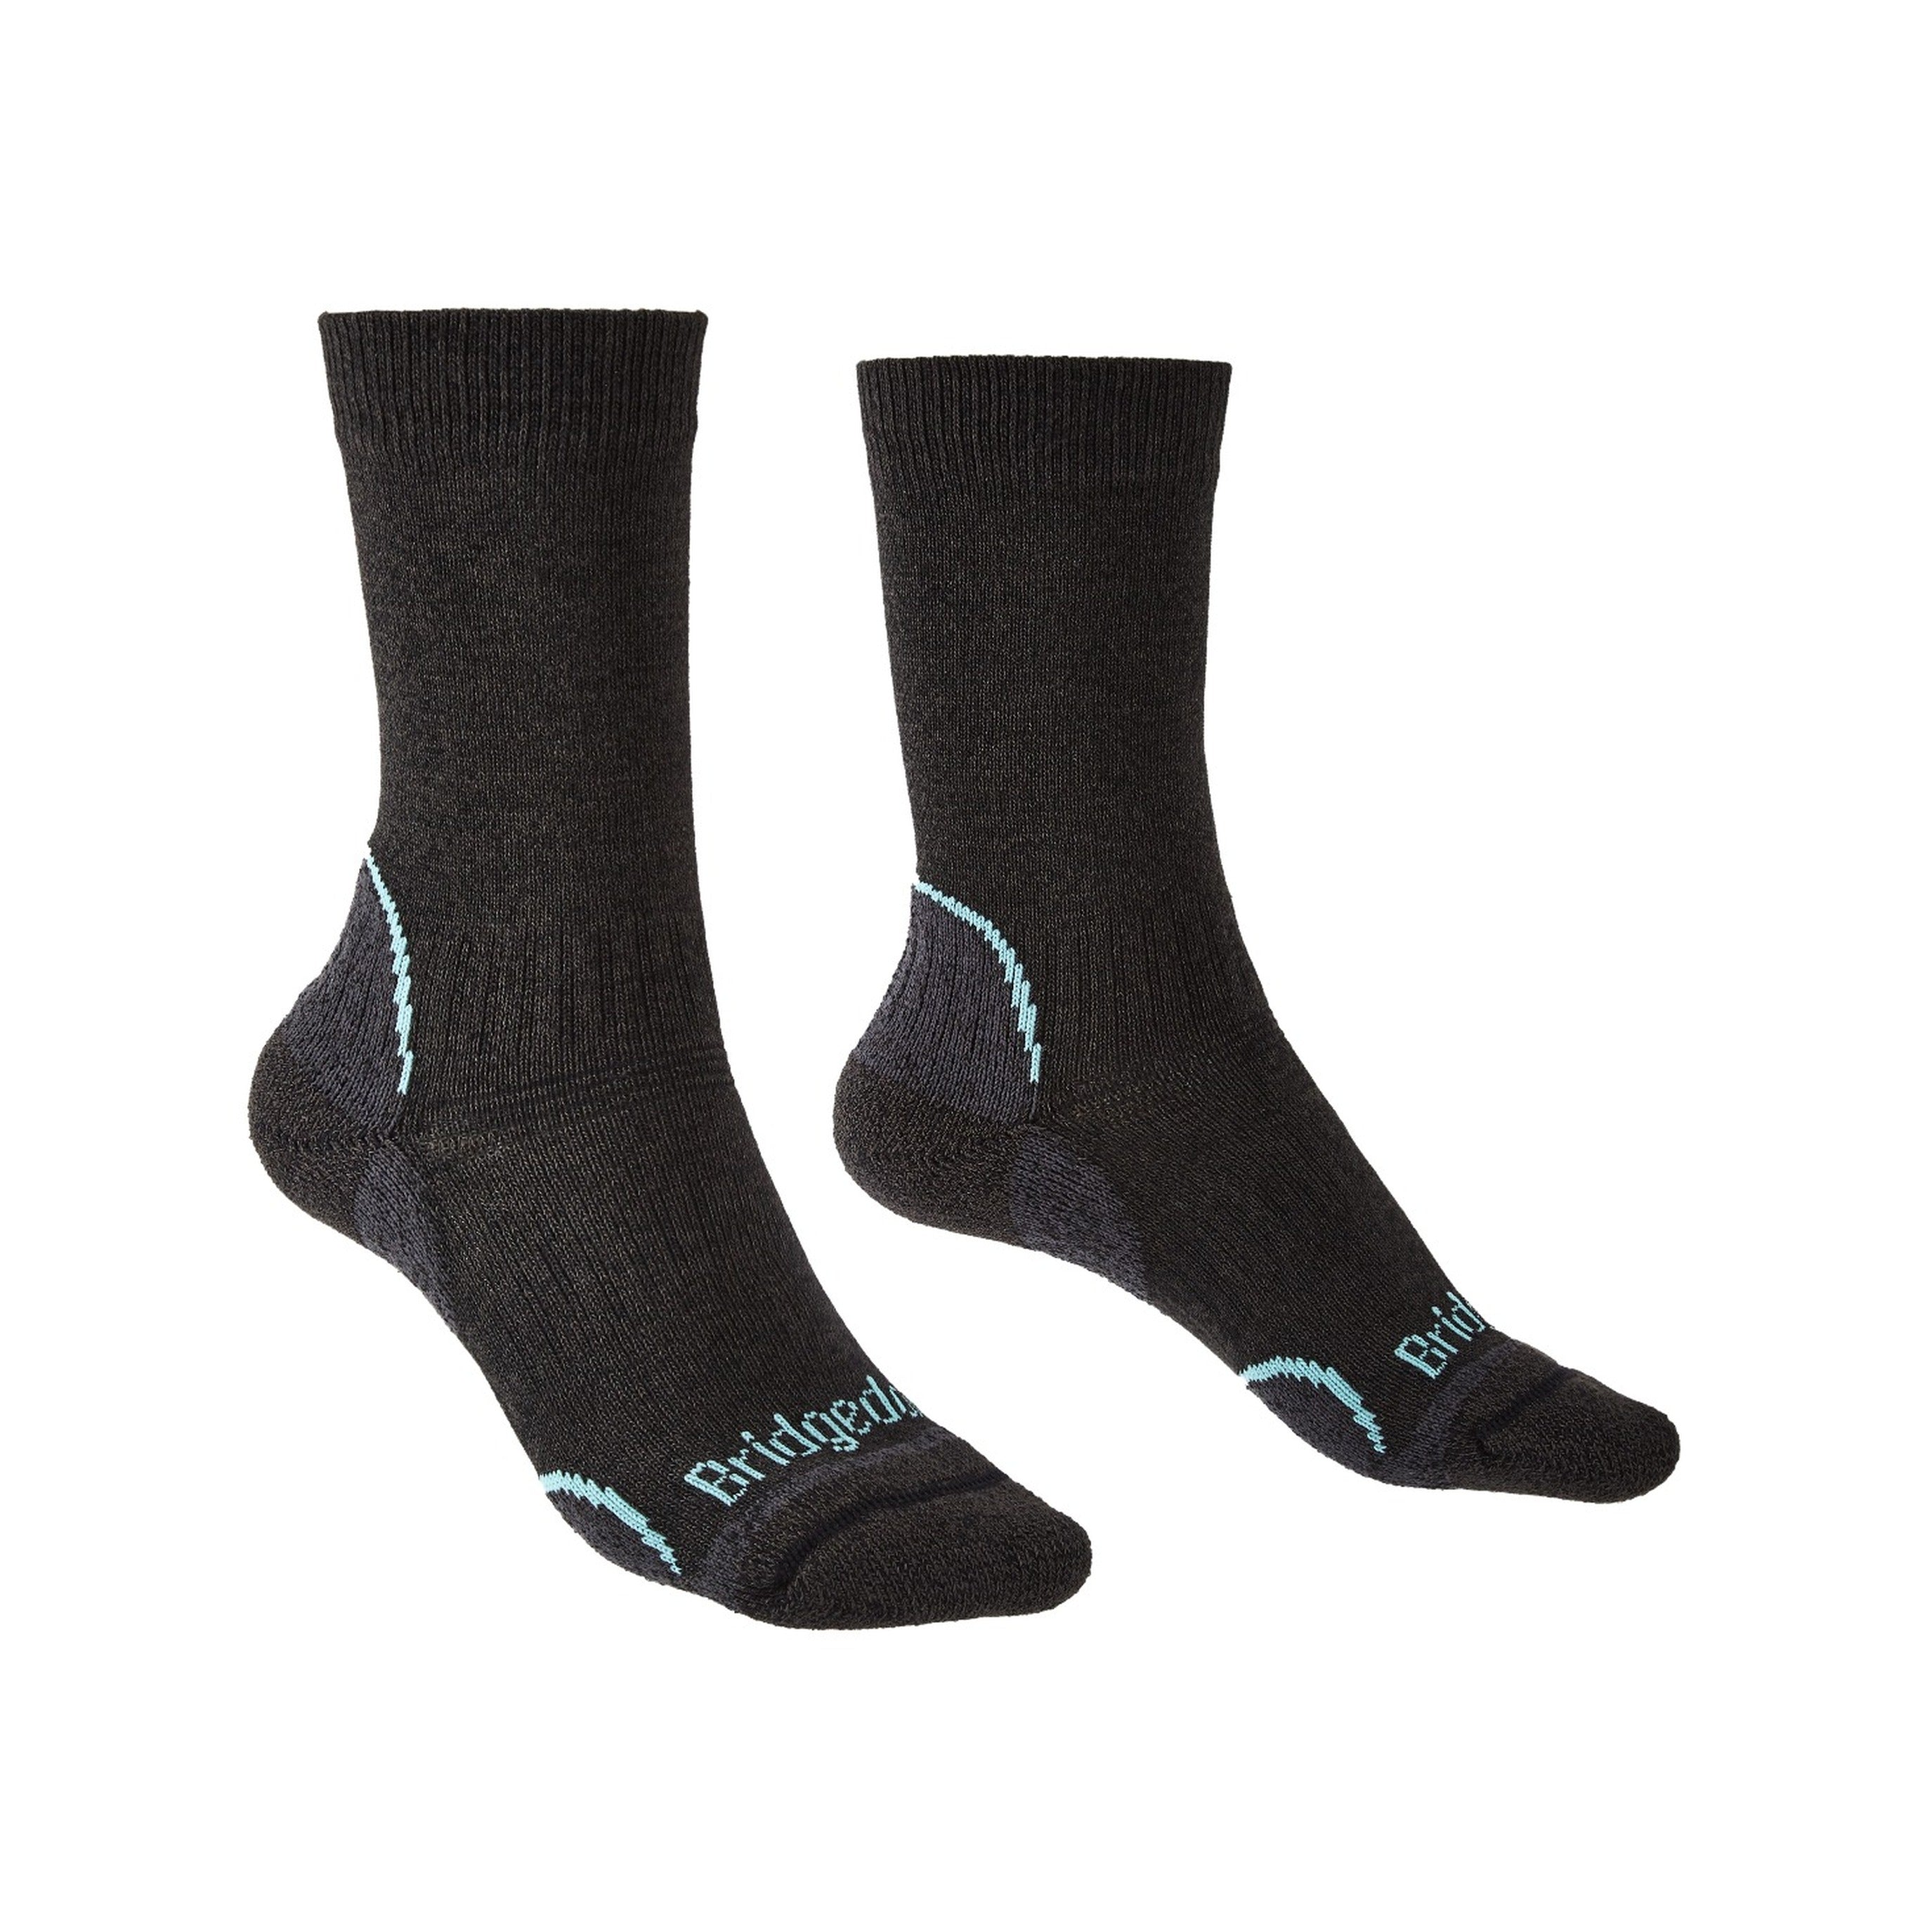 Bridgedale Ultralight T2 Coolmax Sport Low Socks for Women